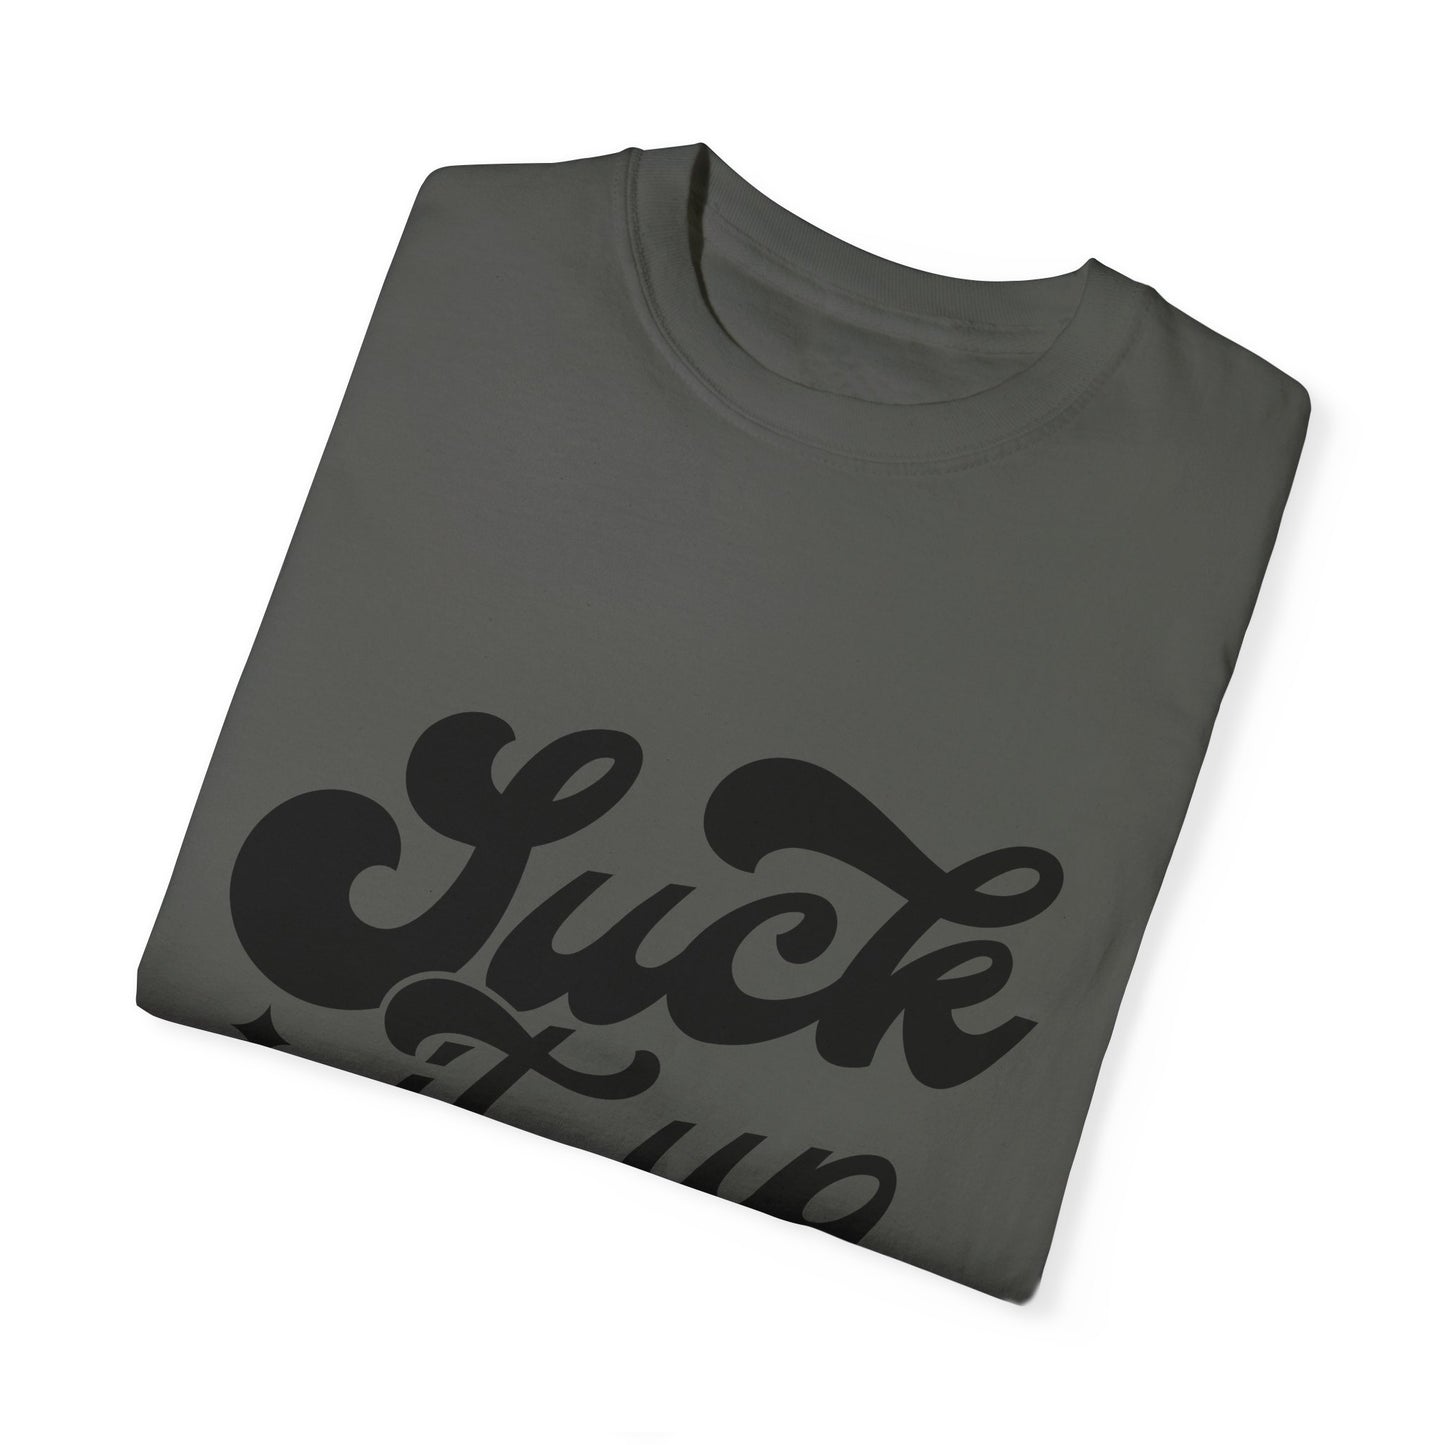 Suck it up buttercup - Unisex Garment-Dyed T-shirt